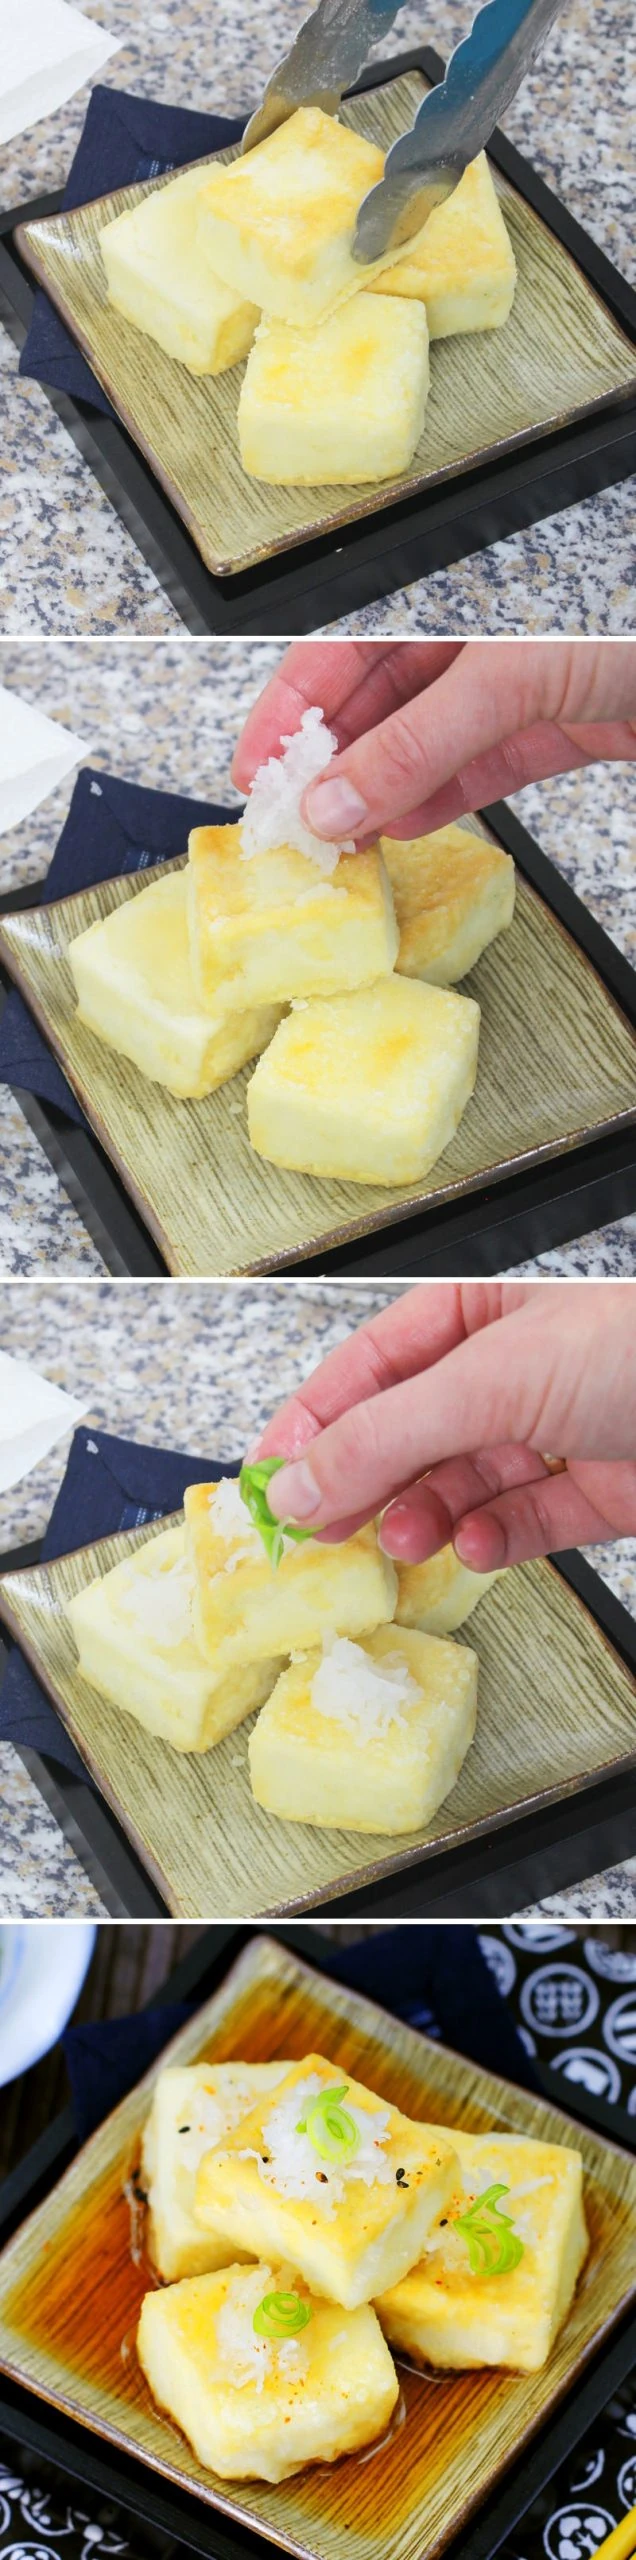 Agedashi Tofu Schritt 8 Servieren